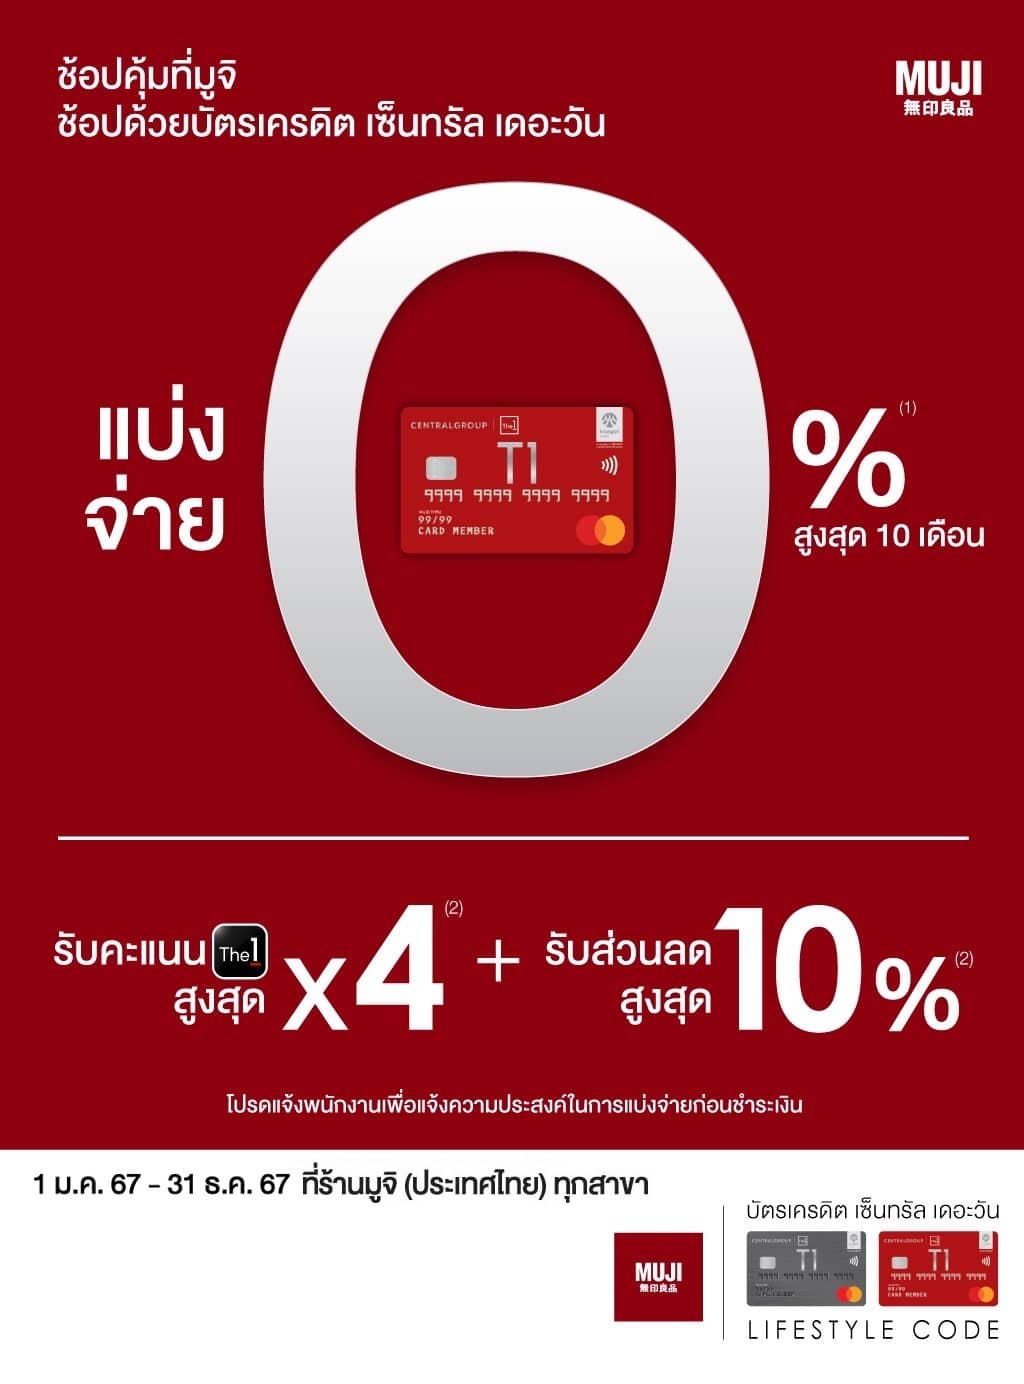 ลดเพิ่มสูงสุด 10% + รับคะแนนเดอะวันสูงสุด X4 + แบ่งจ่าย 0% สูงสุด 10 เดือน ที่ ร้านมูจิ (ประเทศไทย) ทุกสาขา บัตรเครดิต | สมัครบัตรเครดิต | สมัครบัตรเครดิตออนไลน์ | สิทธิประโยชน์บัตรเครดิต | สมัครสินเชื่อออนไลน์ | บัตรเครดิต ผ่อน 0% | บัตรเครดิต ใช้ต่างประเทศ | บัตรเครดิต ท่องเที่ยว | บัตรเครดิตเติมน้ำมัน